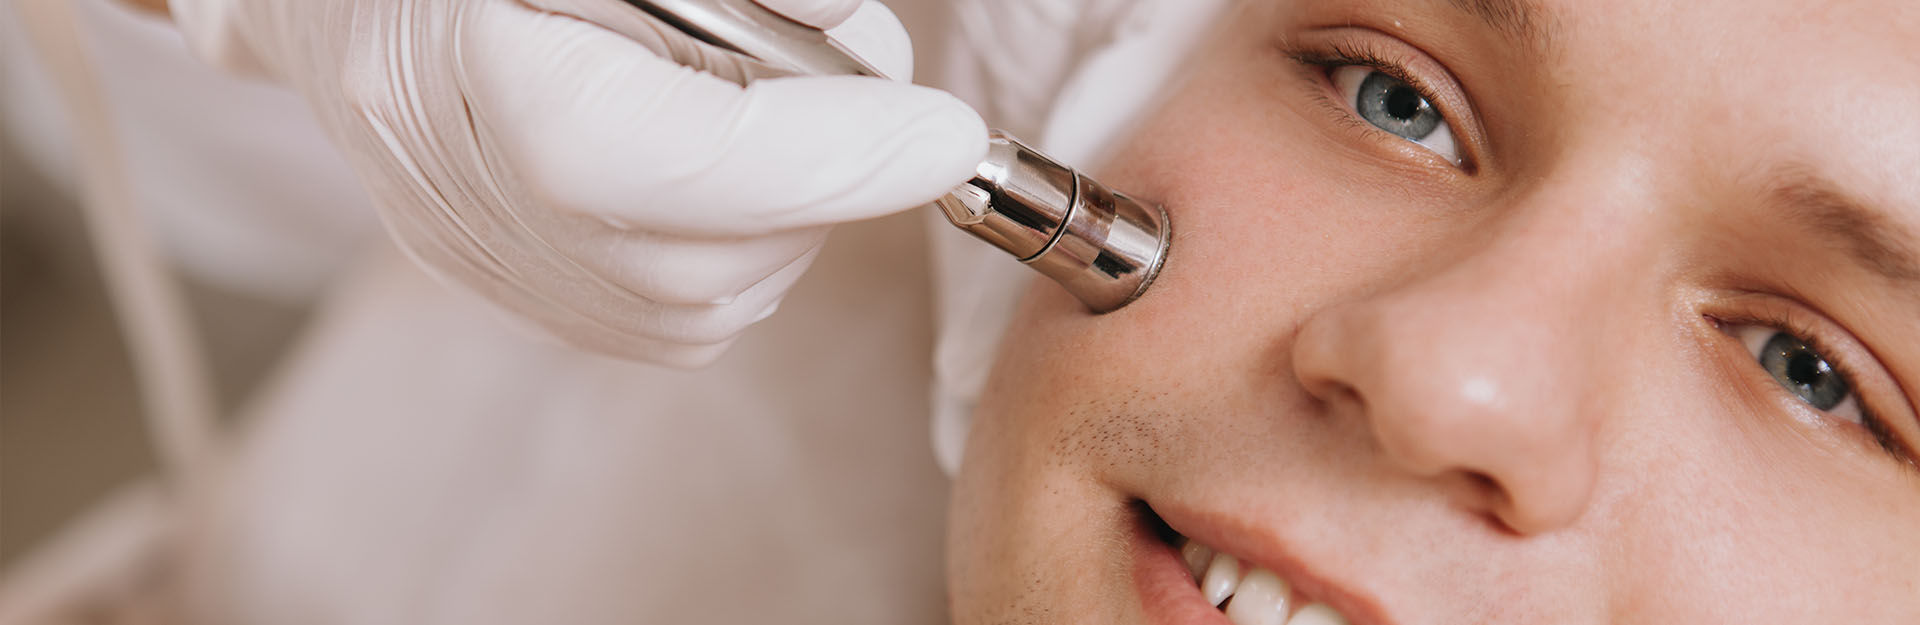 Microdermabrasie gezichtsbehandeling voor de man en de mannenhuid